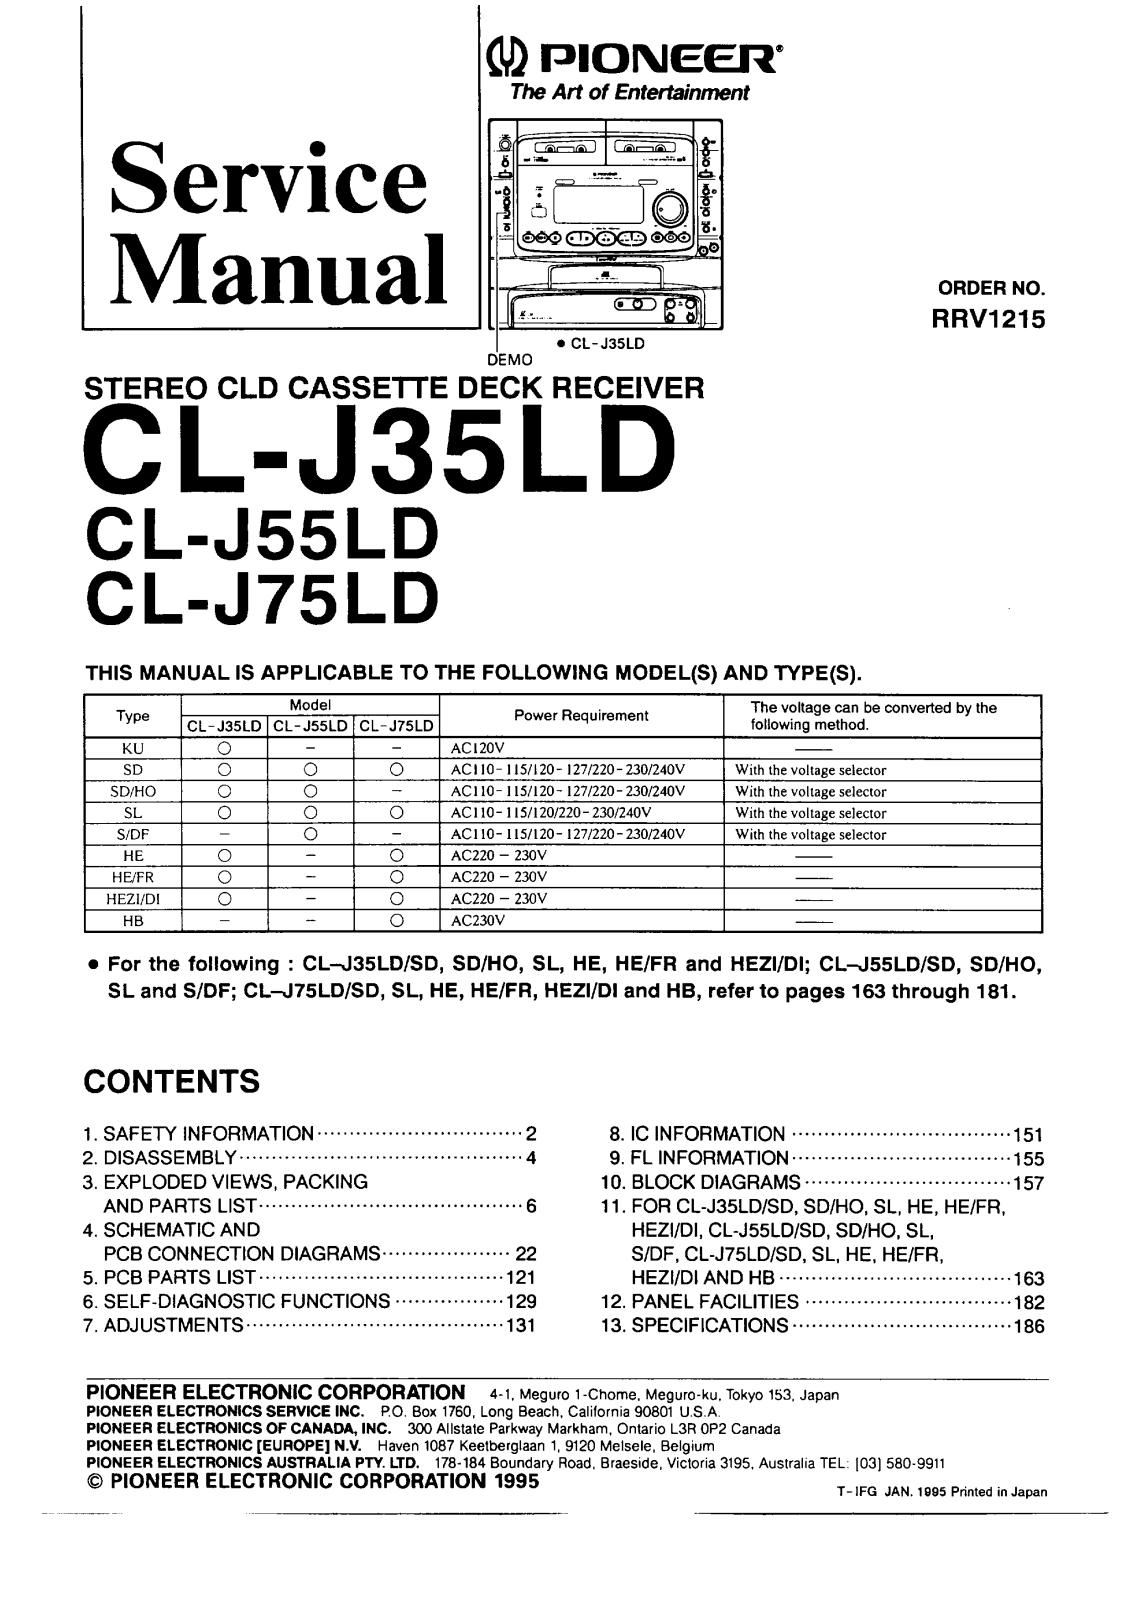 Pioneer CLJ-35-LD, CLJ-55-LD, CLJ-75-LD Service manual